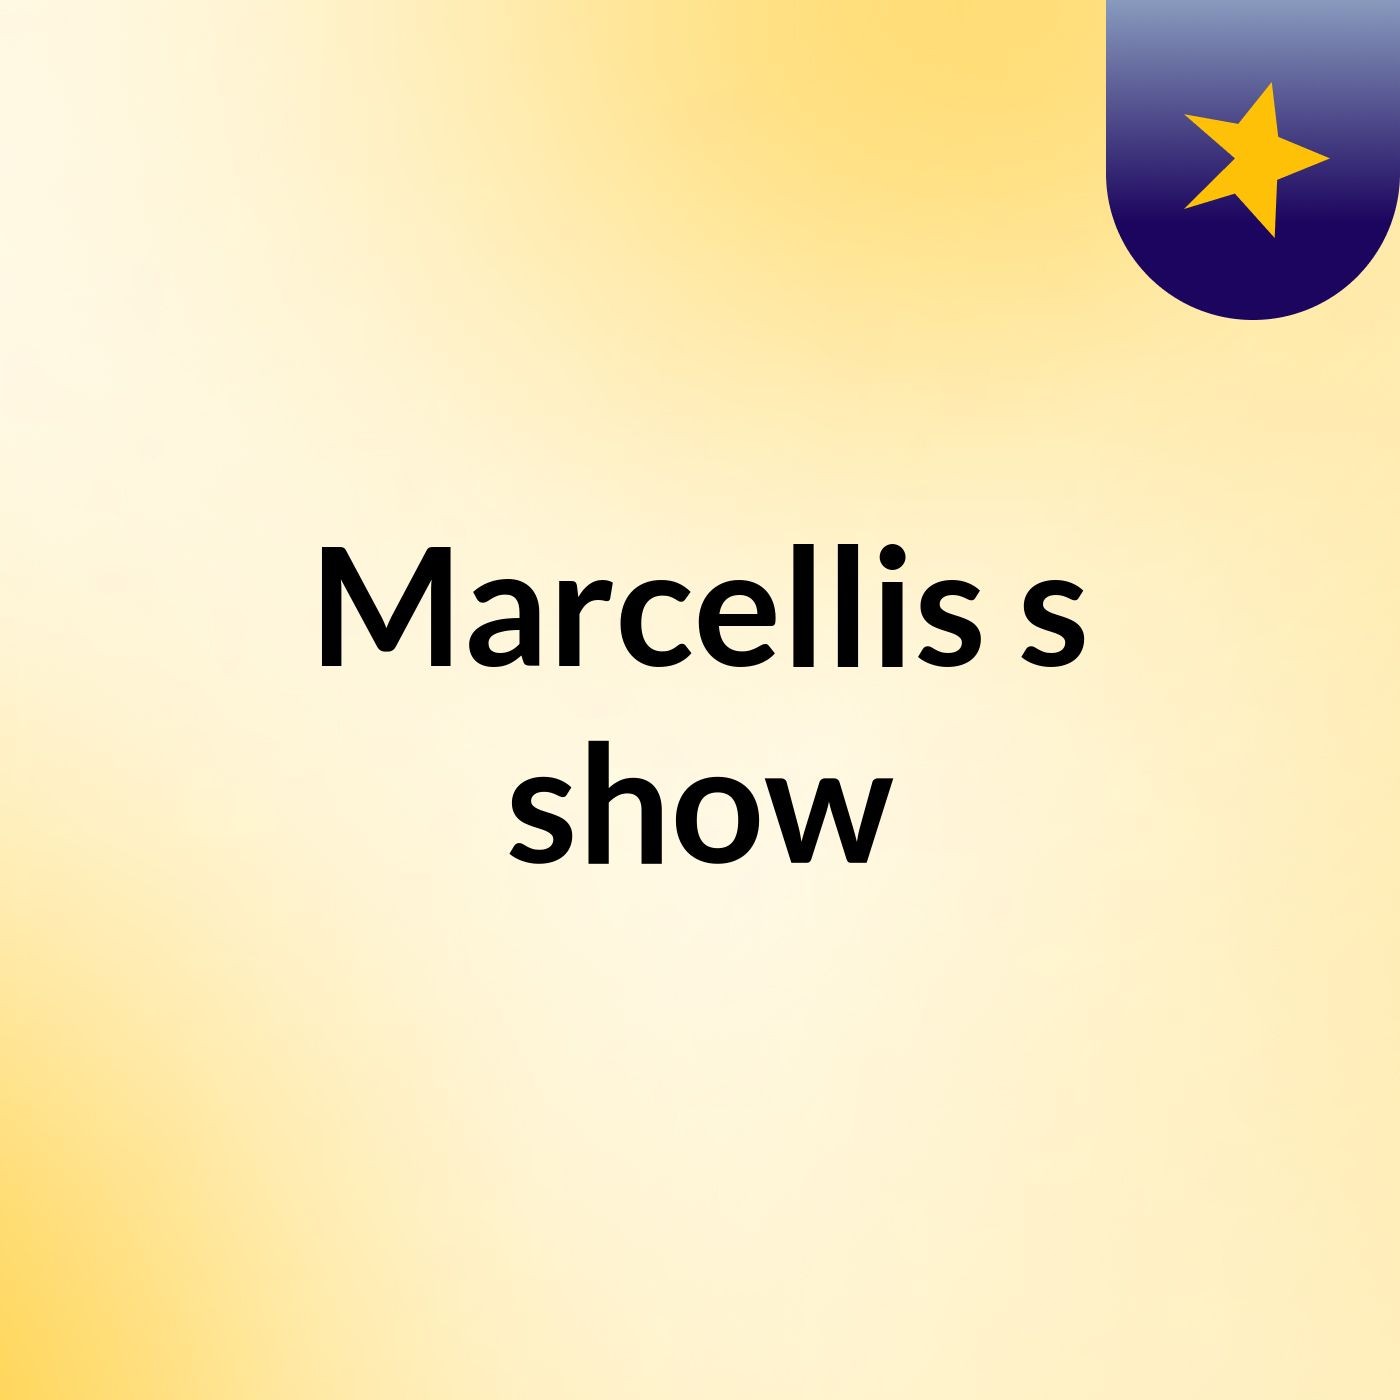 Marcellis's show